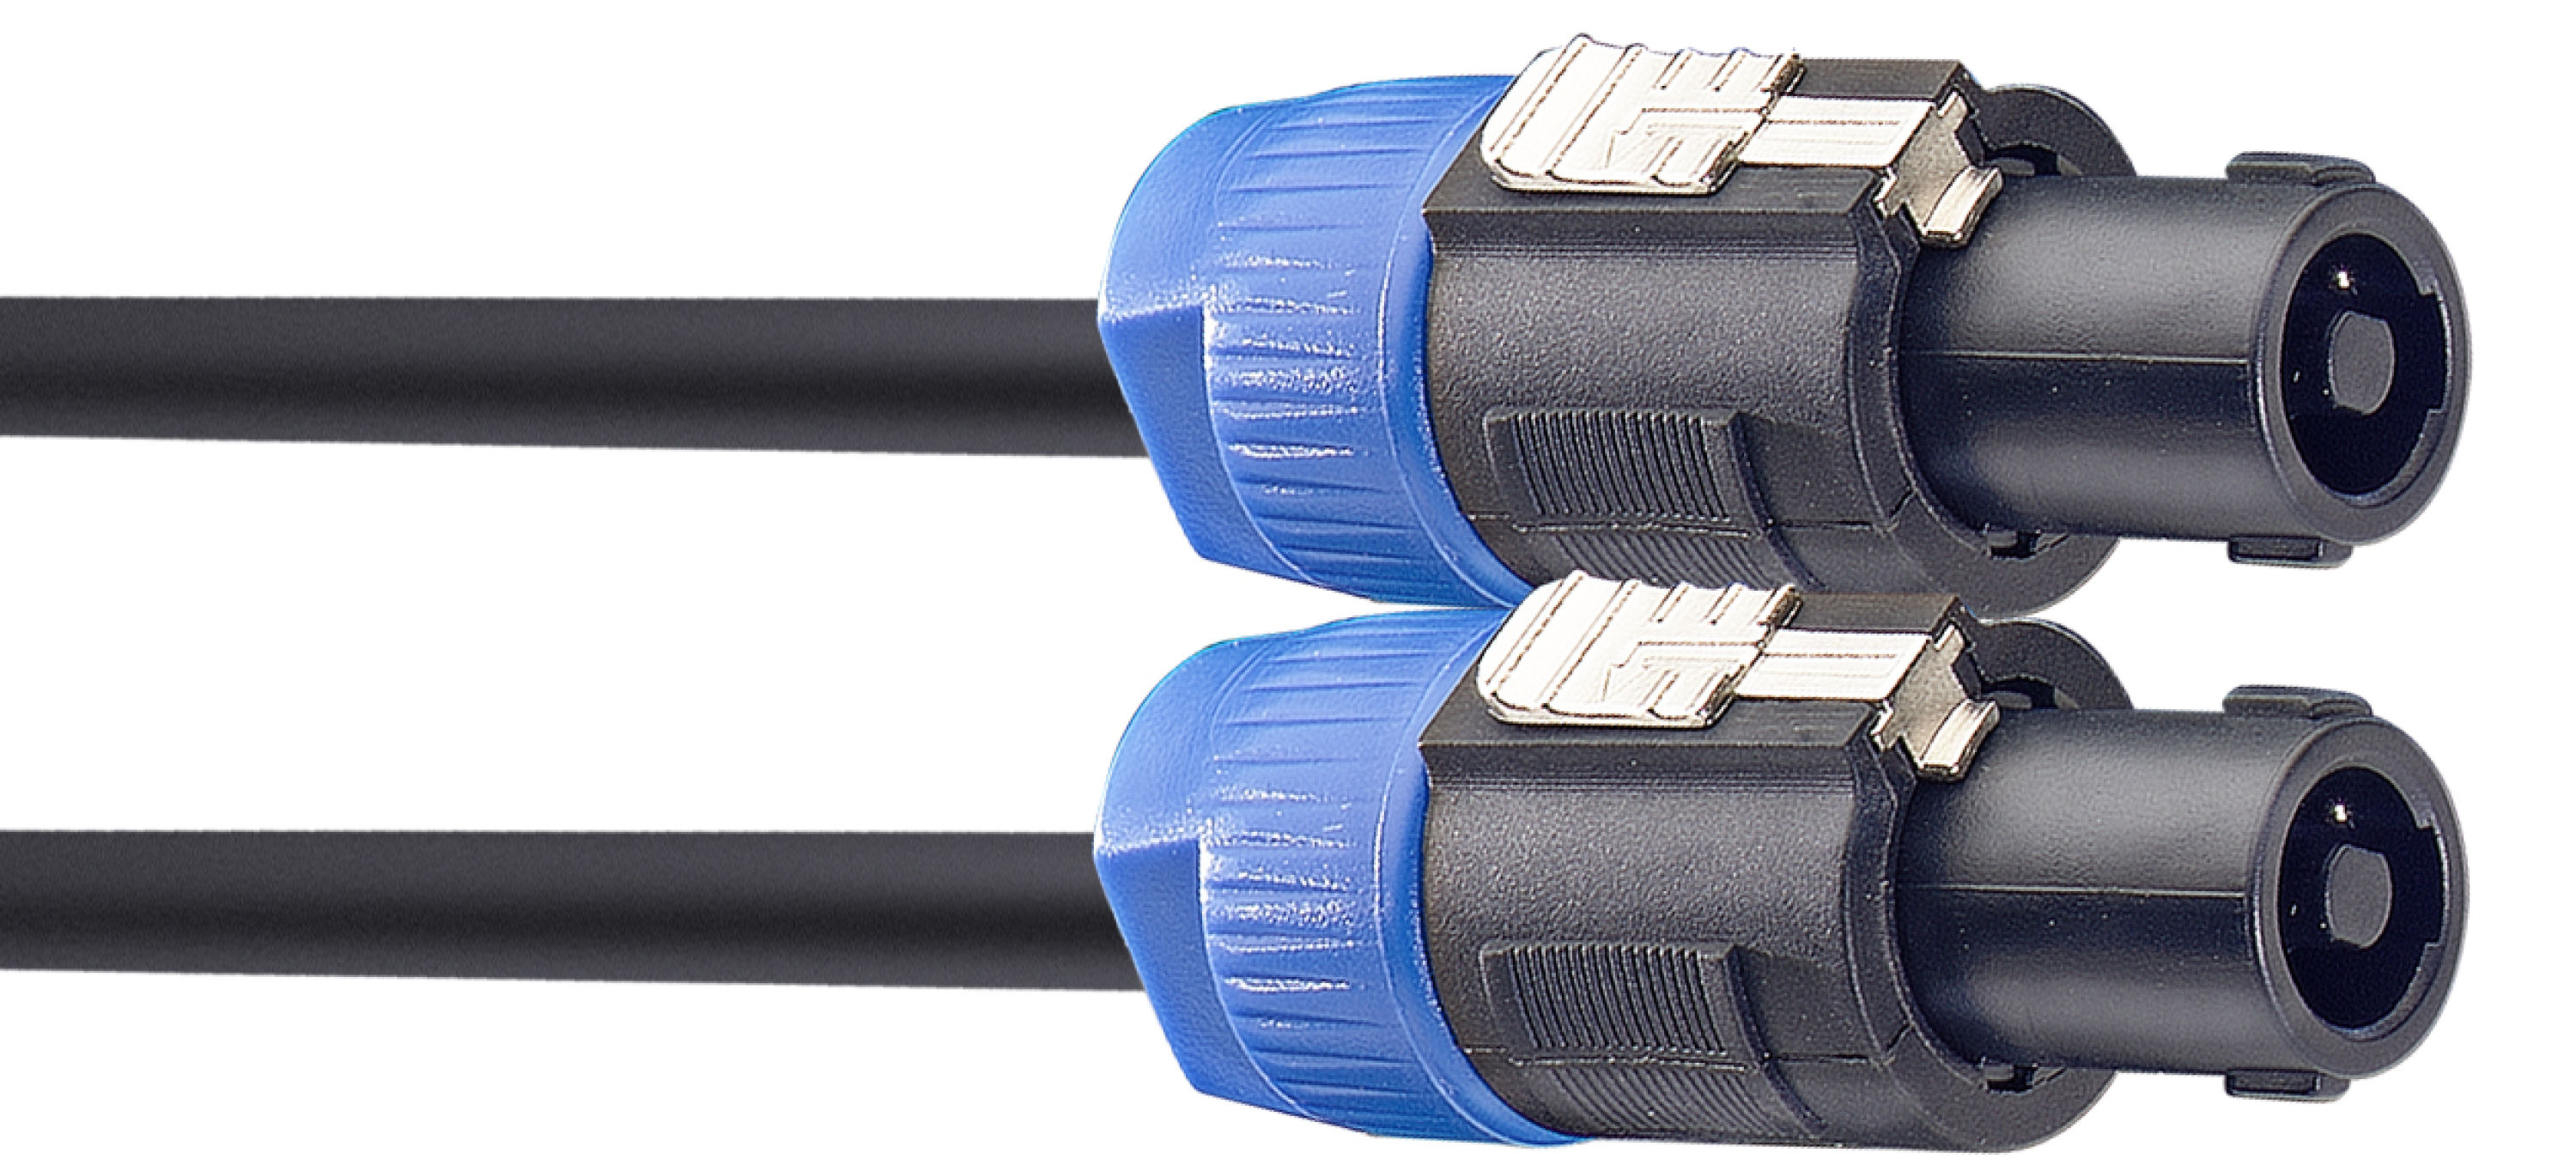 Stagg SSP10SS25, reproduktorový kabel Speakon - Speakon zástrčka, 10m